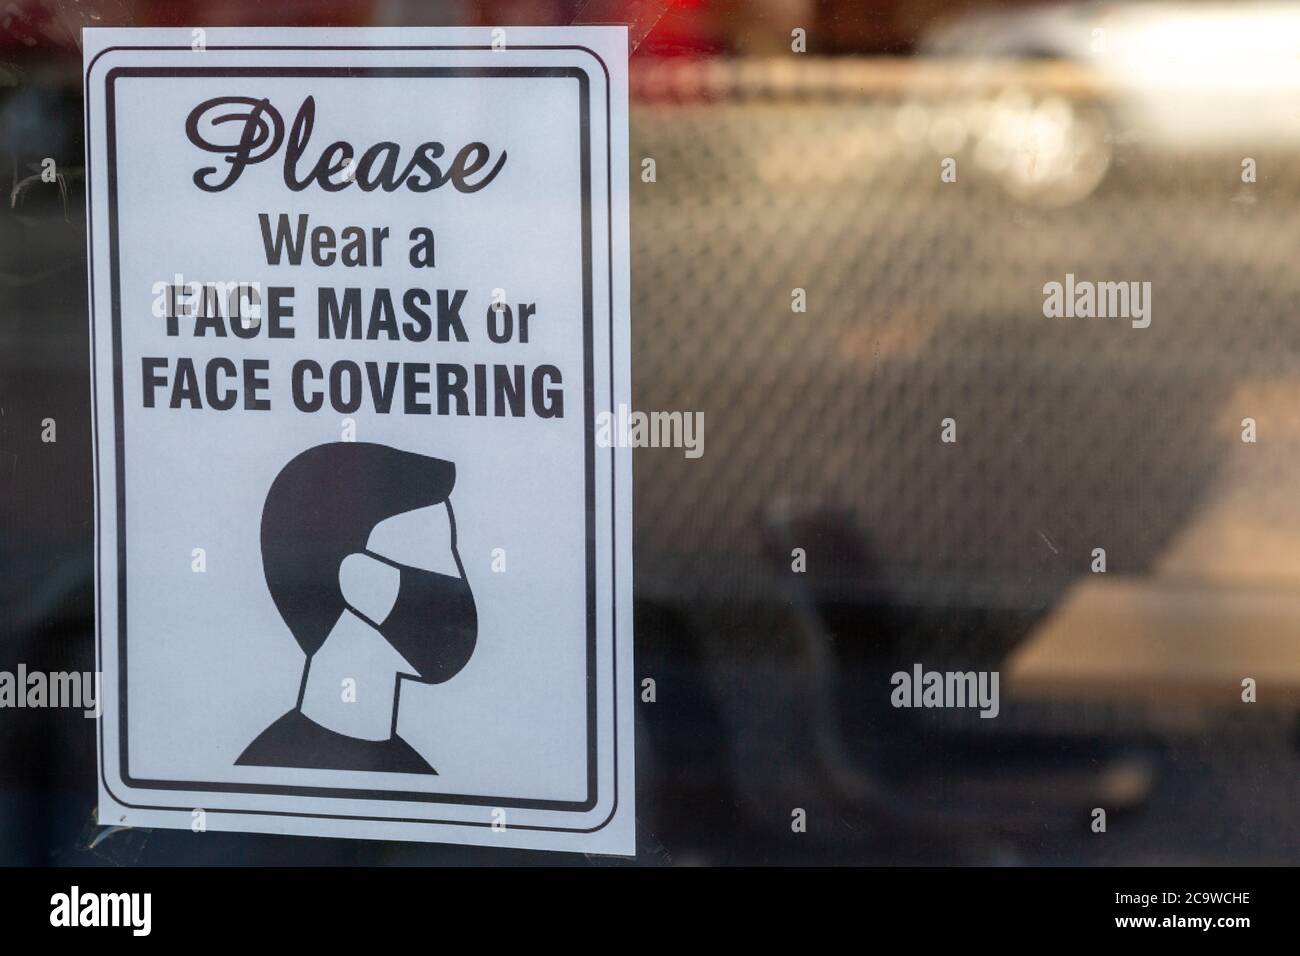 Ein Schild in einem Schaufenster, das besagt, dass Sie müssen Tragen Sie Gesichtsmasken oder Gesichtsbedeckungen in Übereinstimmung mit der Regierung Richtlinien während des Coronavirus-Ausbruchs Stockfoto